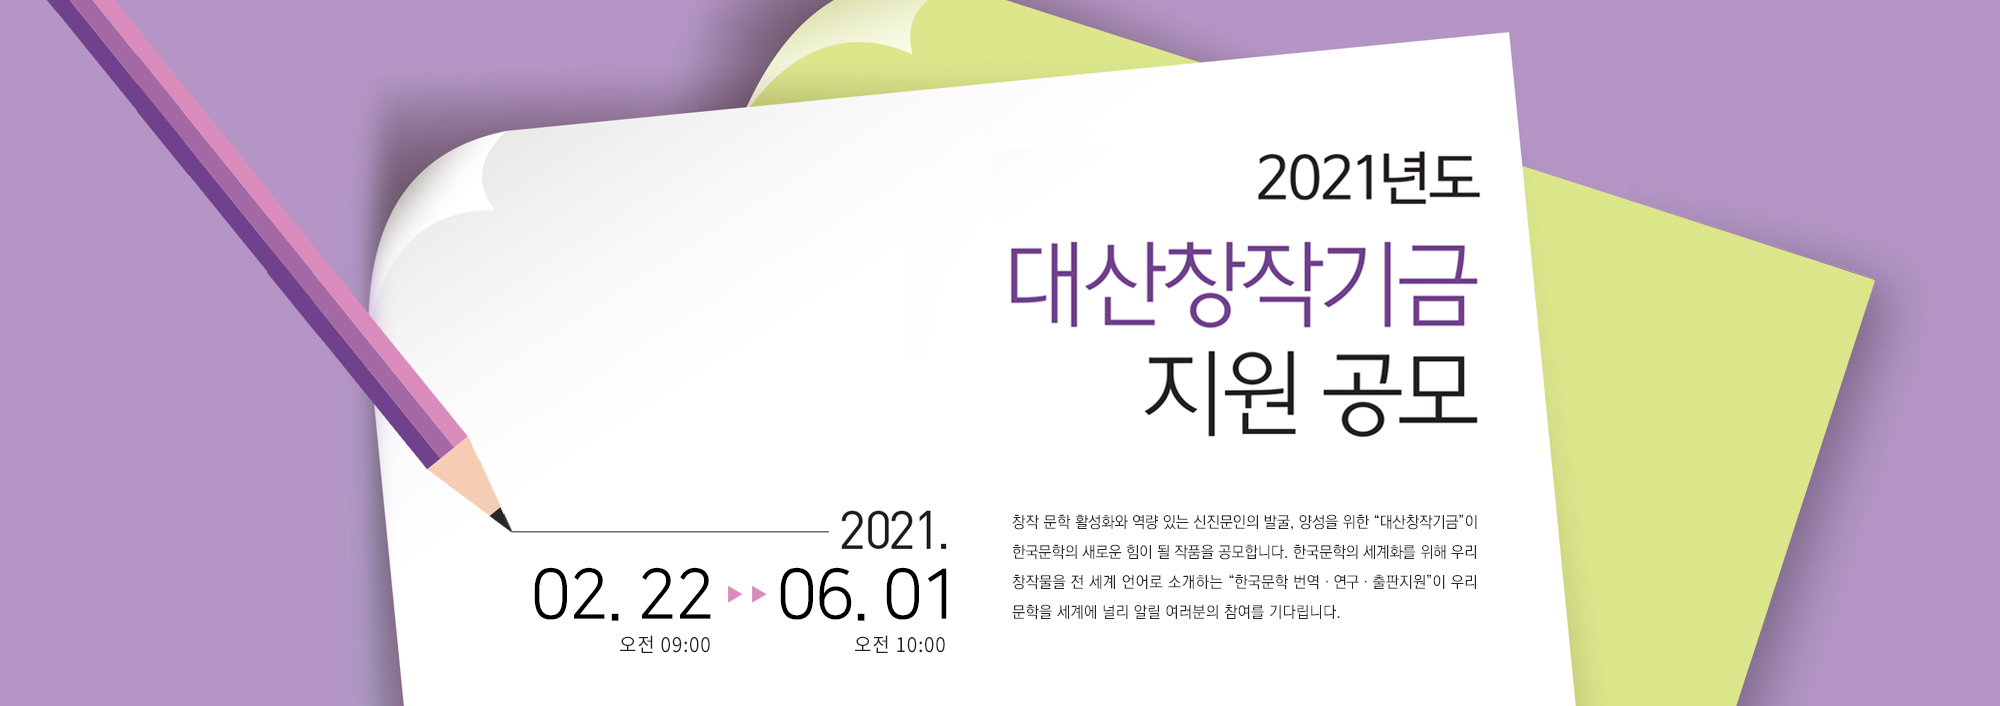 2021 대산창작기금 공모 포스터